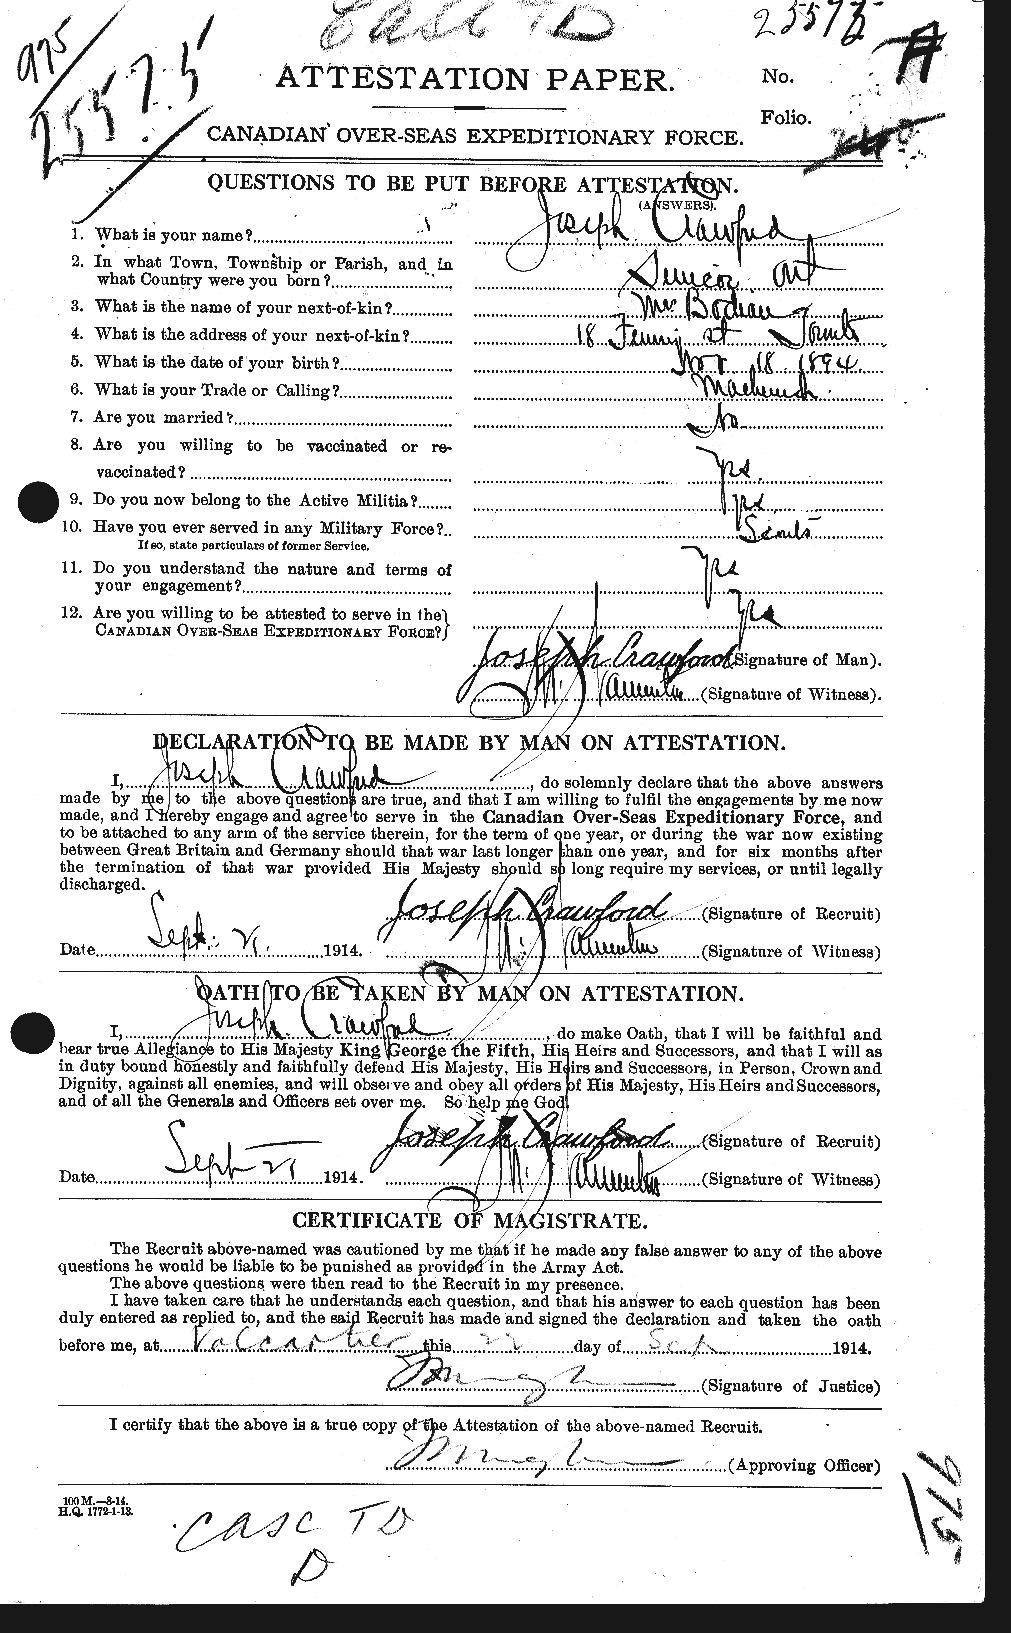 Dossiers du Personnel de la Première Guerre mondiale - CEC 061813a